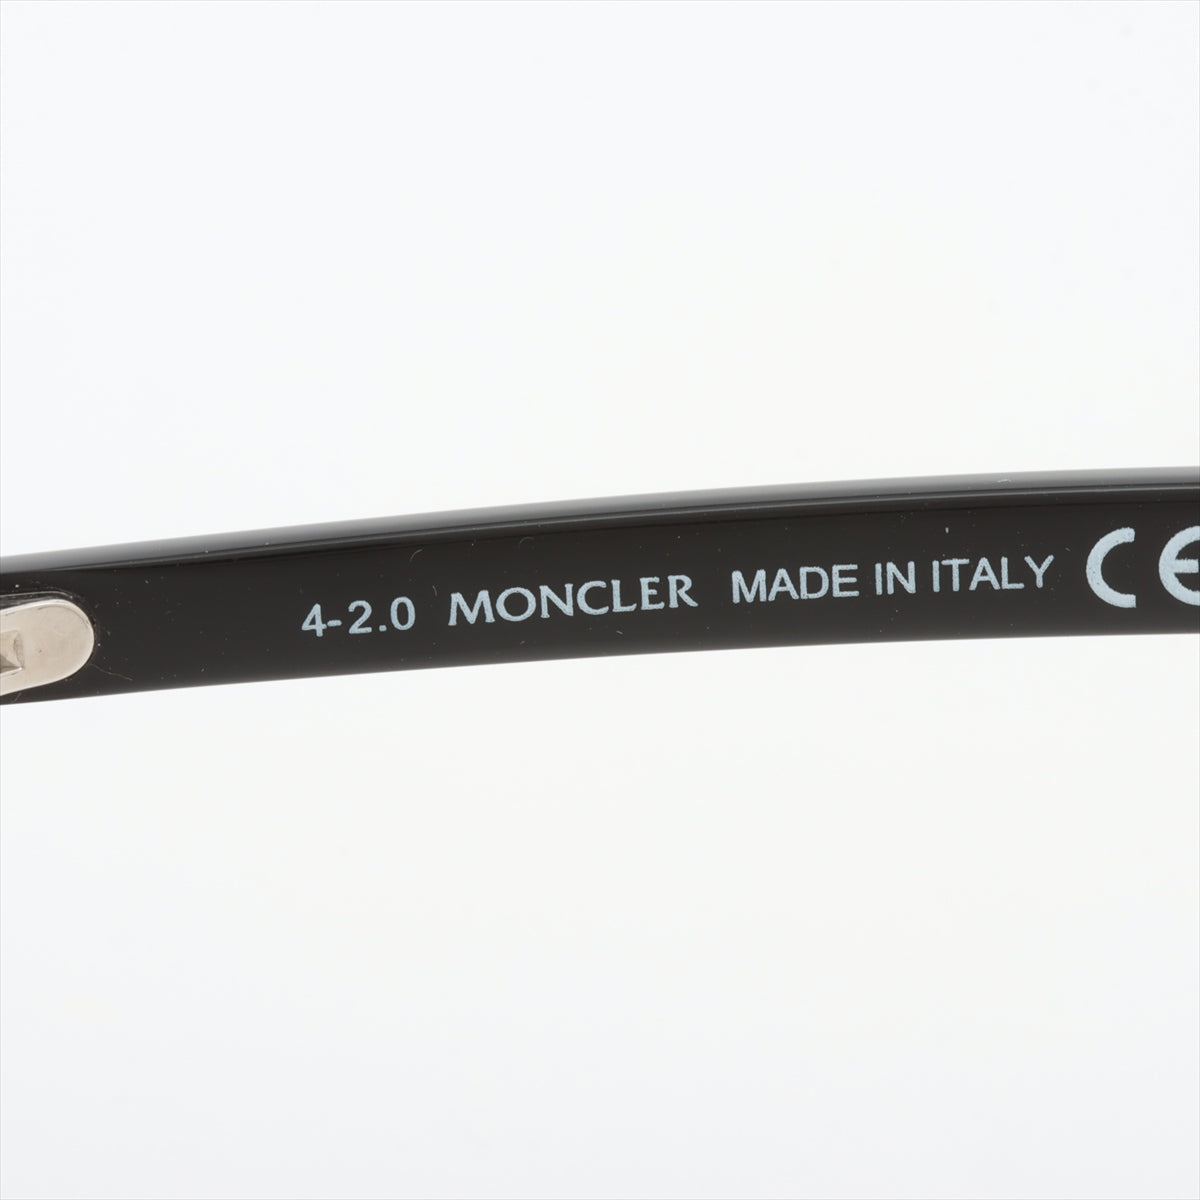 Moncler ML5139-D Logo Glasses Resin Black